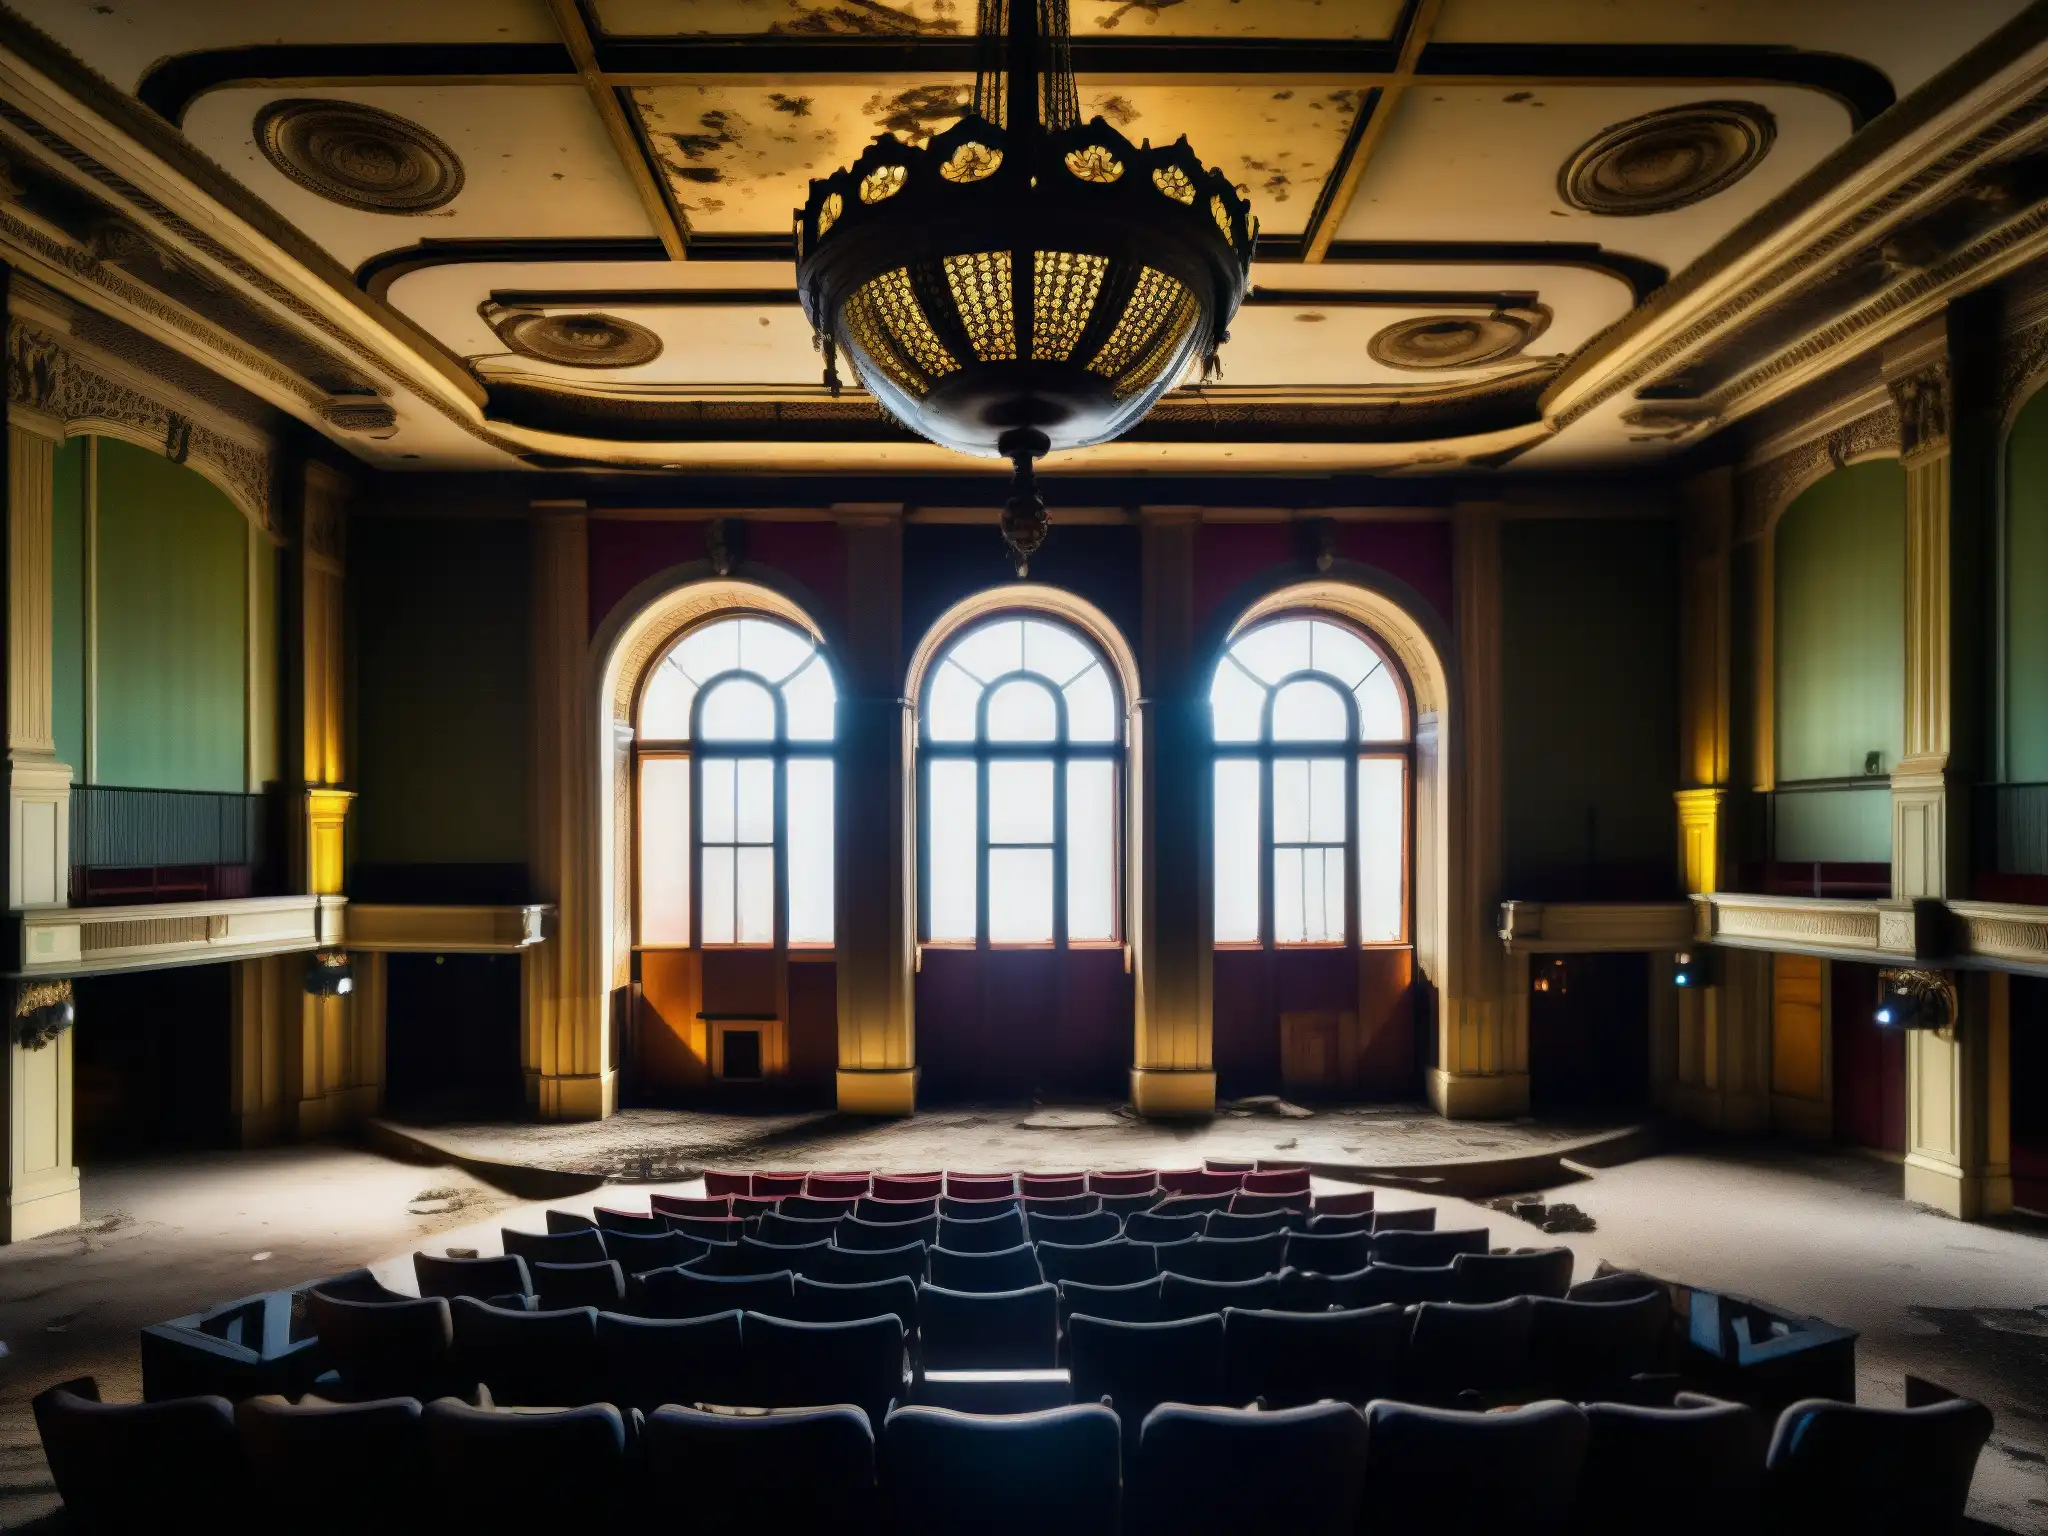 Explora el misterioso interior abandonado de la Ópera de Detroit, con su arquitectura grandiosa y decadente, capturando un ambiente fantasmal